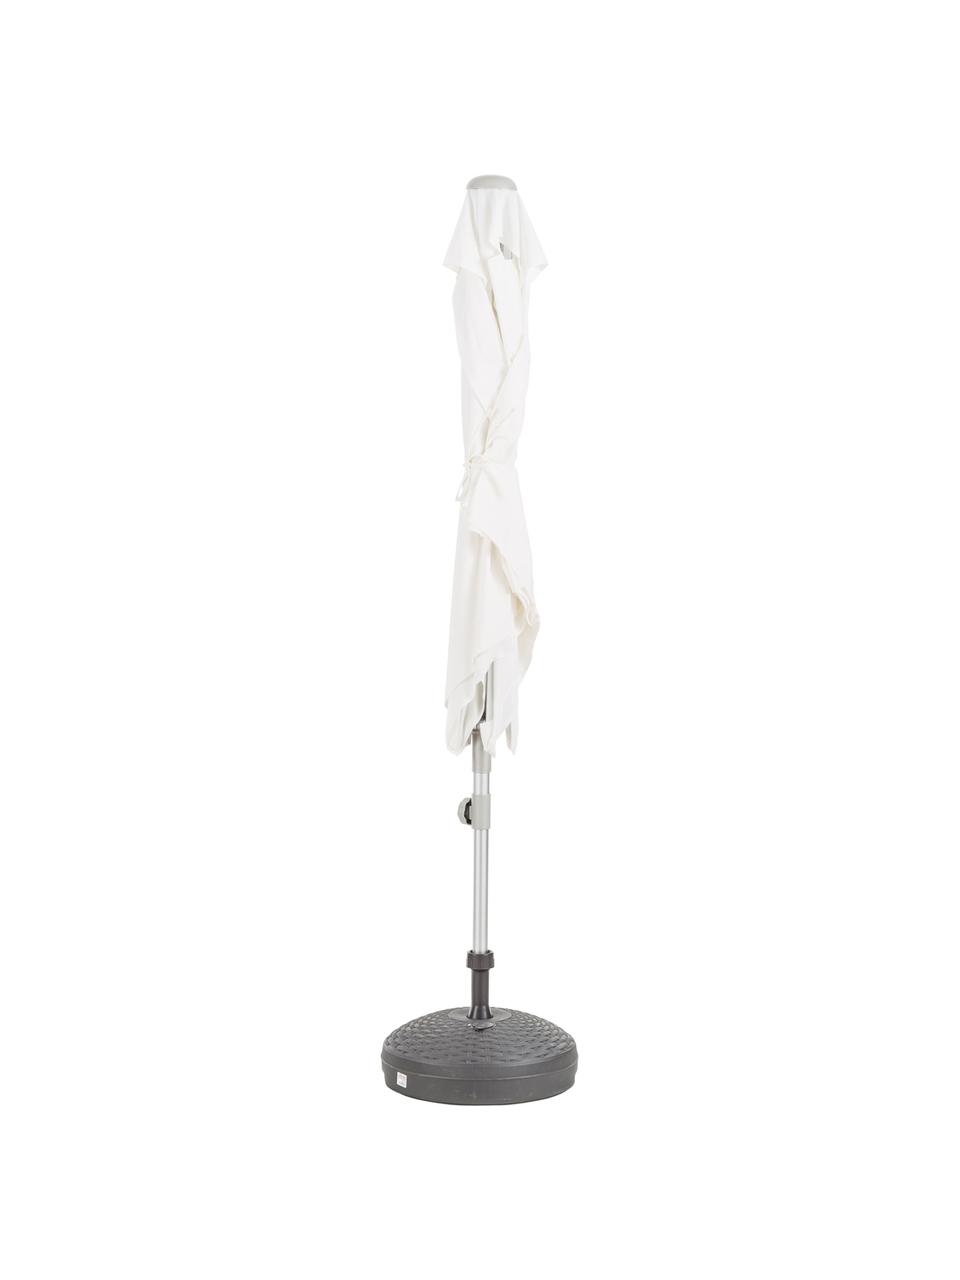 Sombrilla Elba, regulable en altura y abatible, Aluminio, blanco, An 150 x Al 250 cm